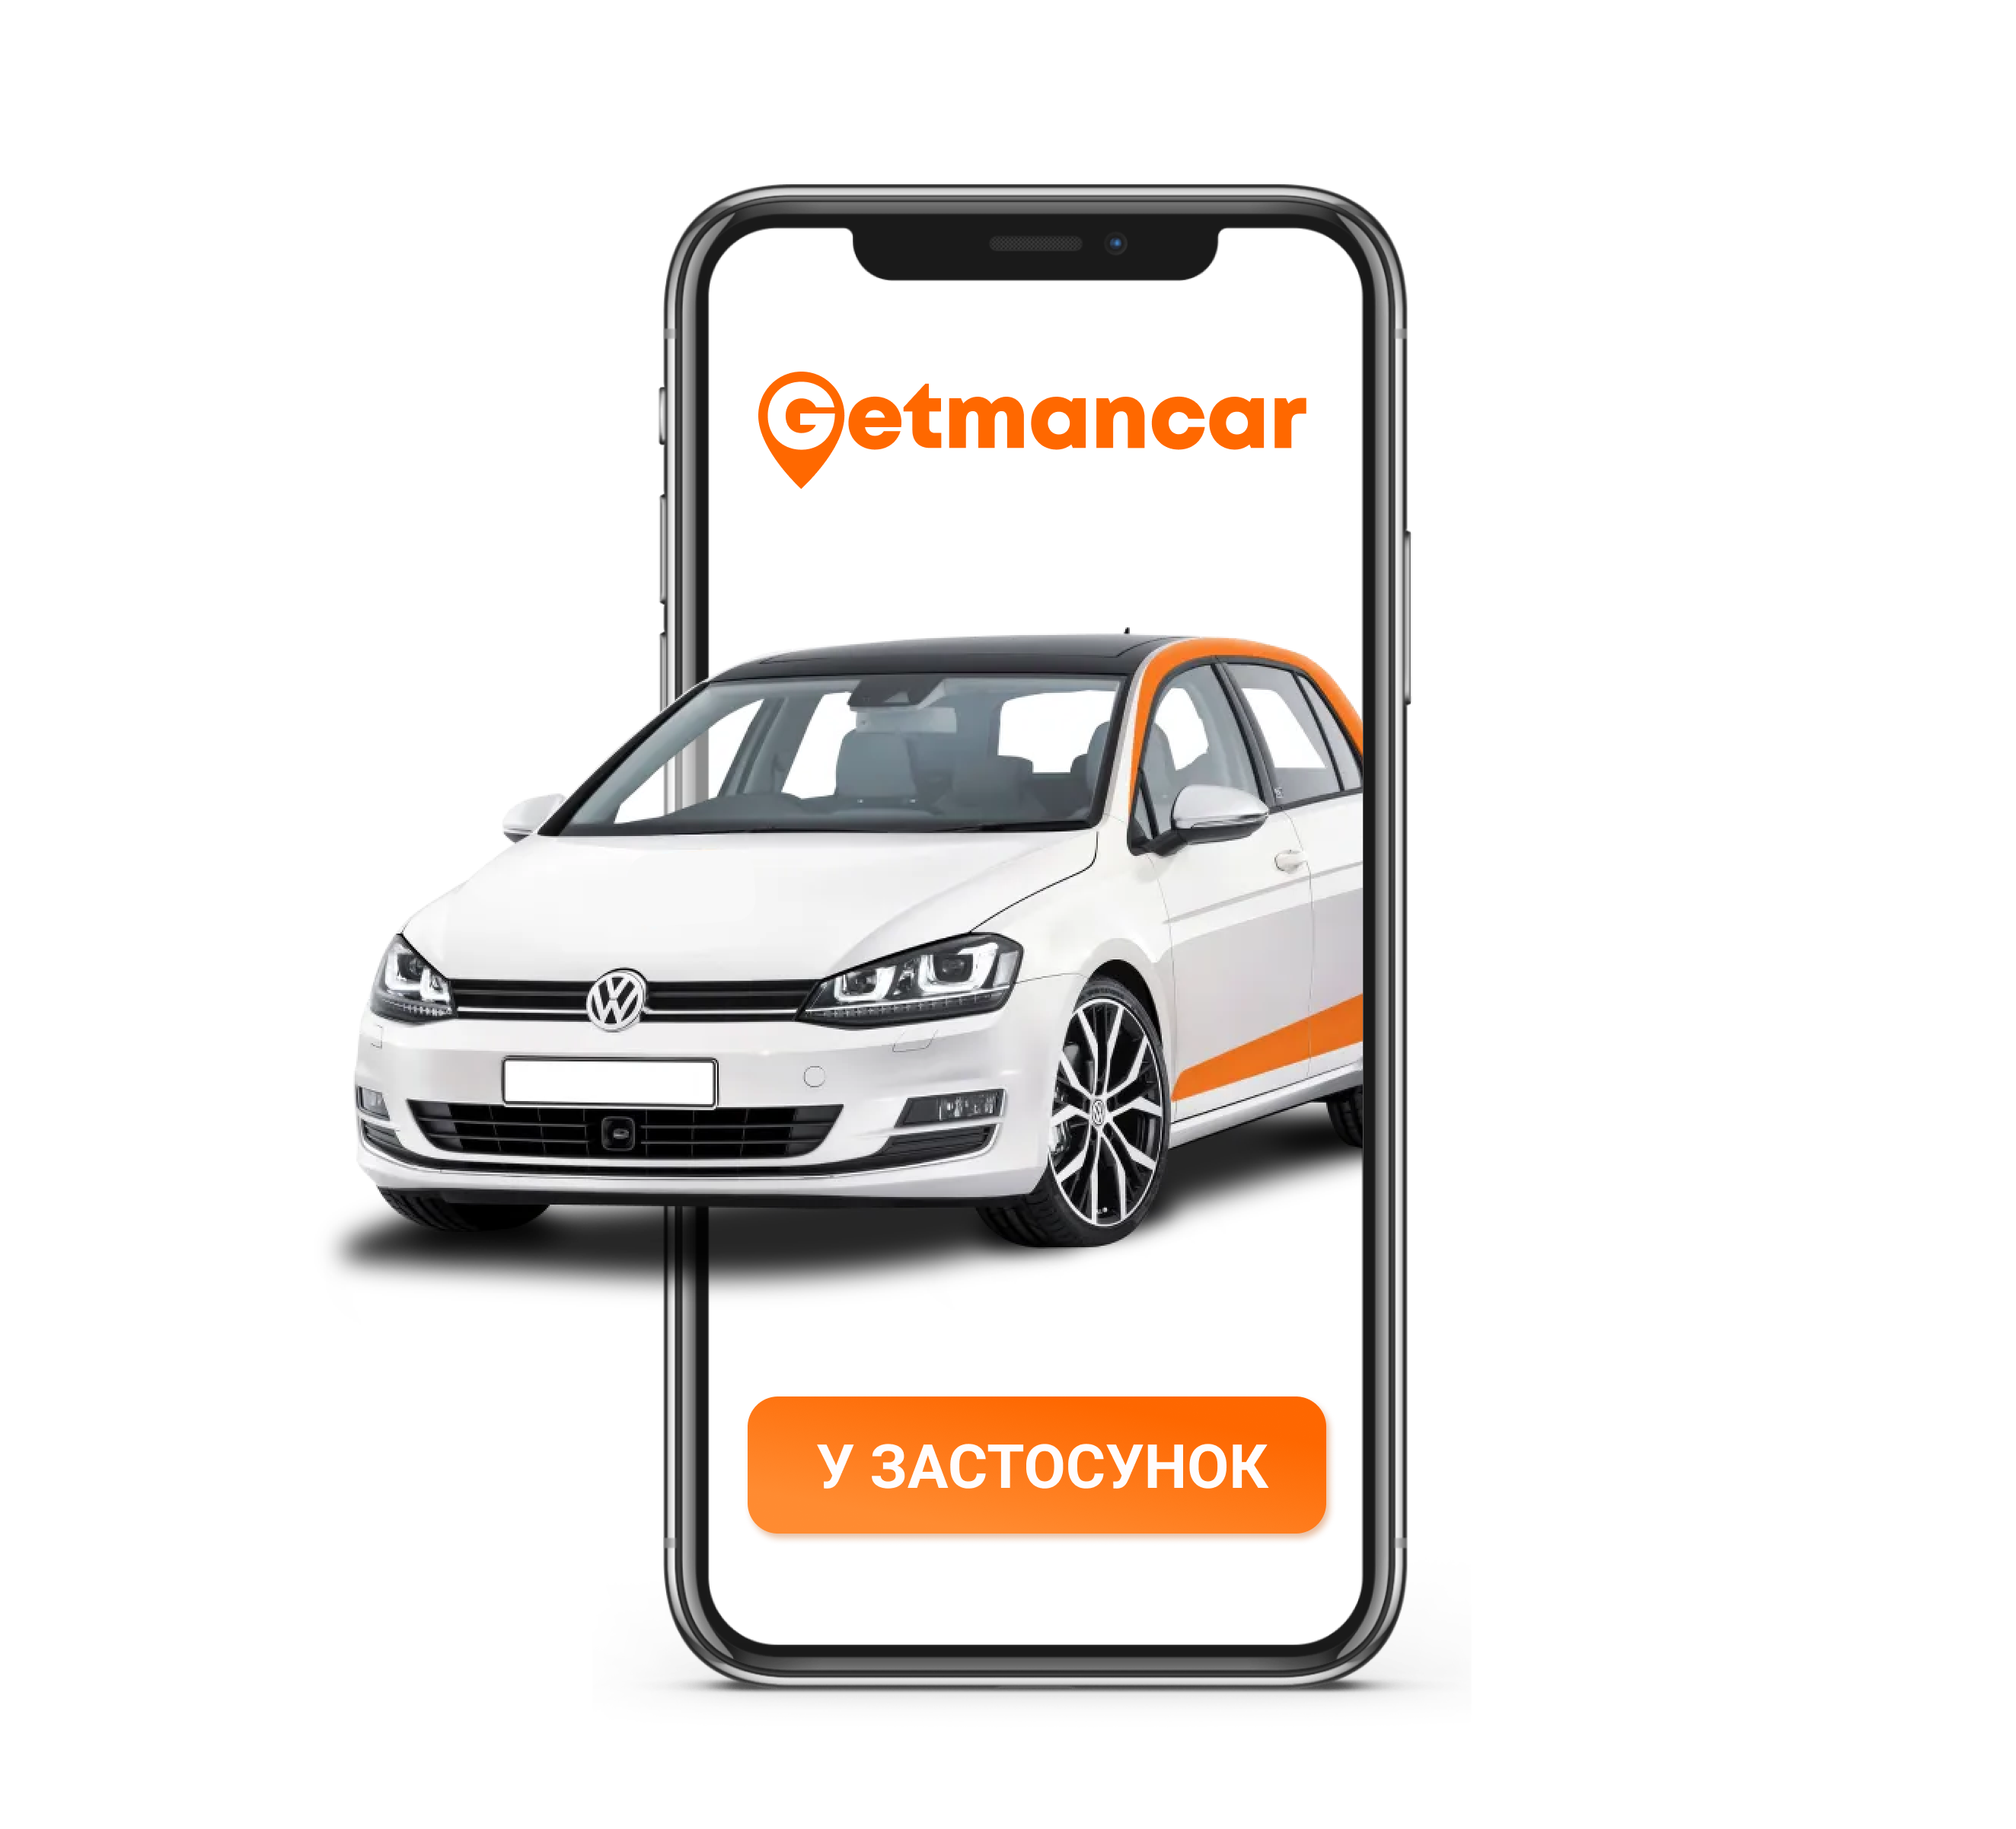 in Getmancar app